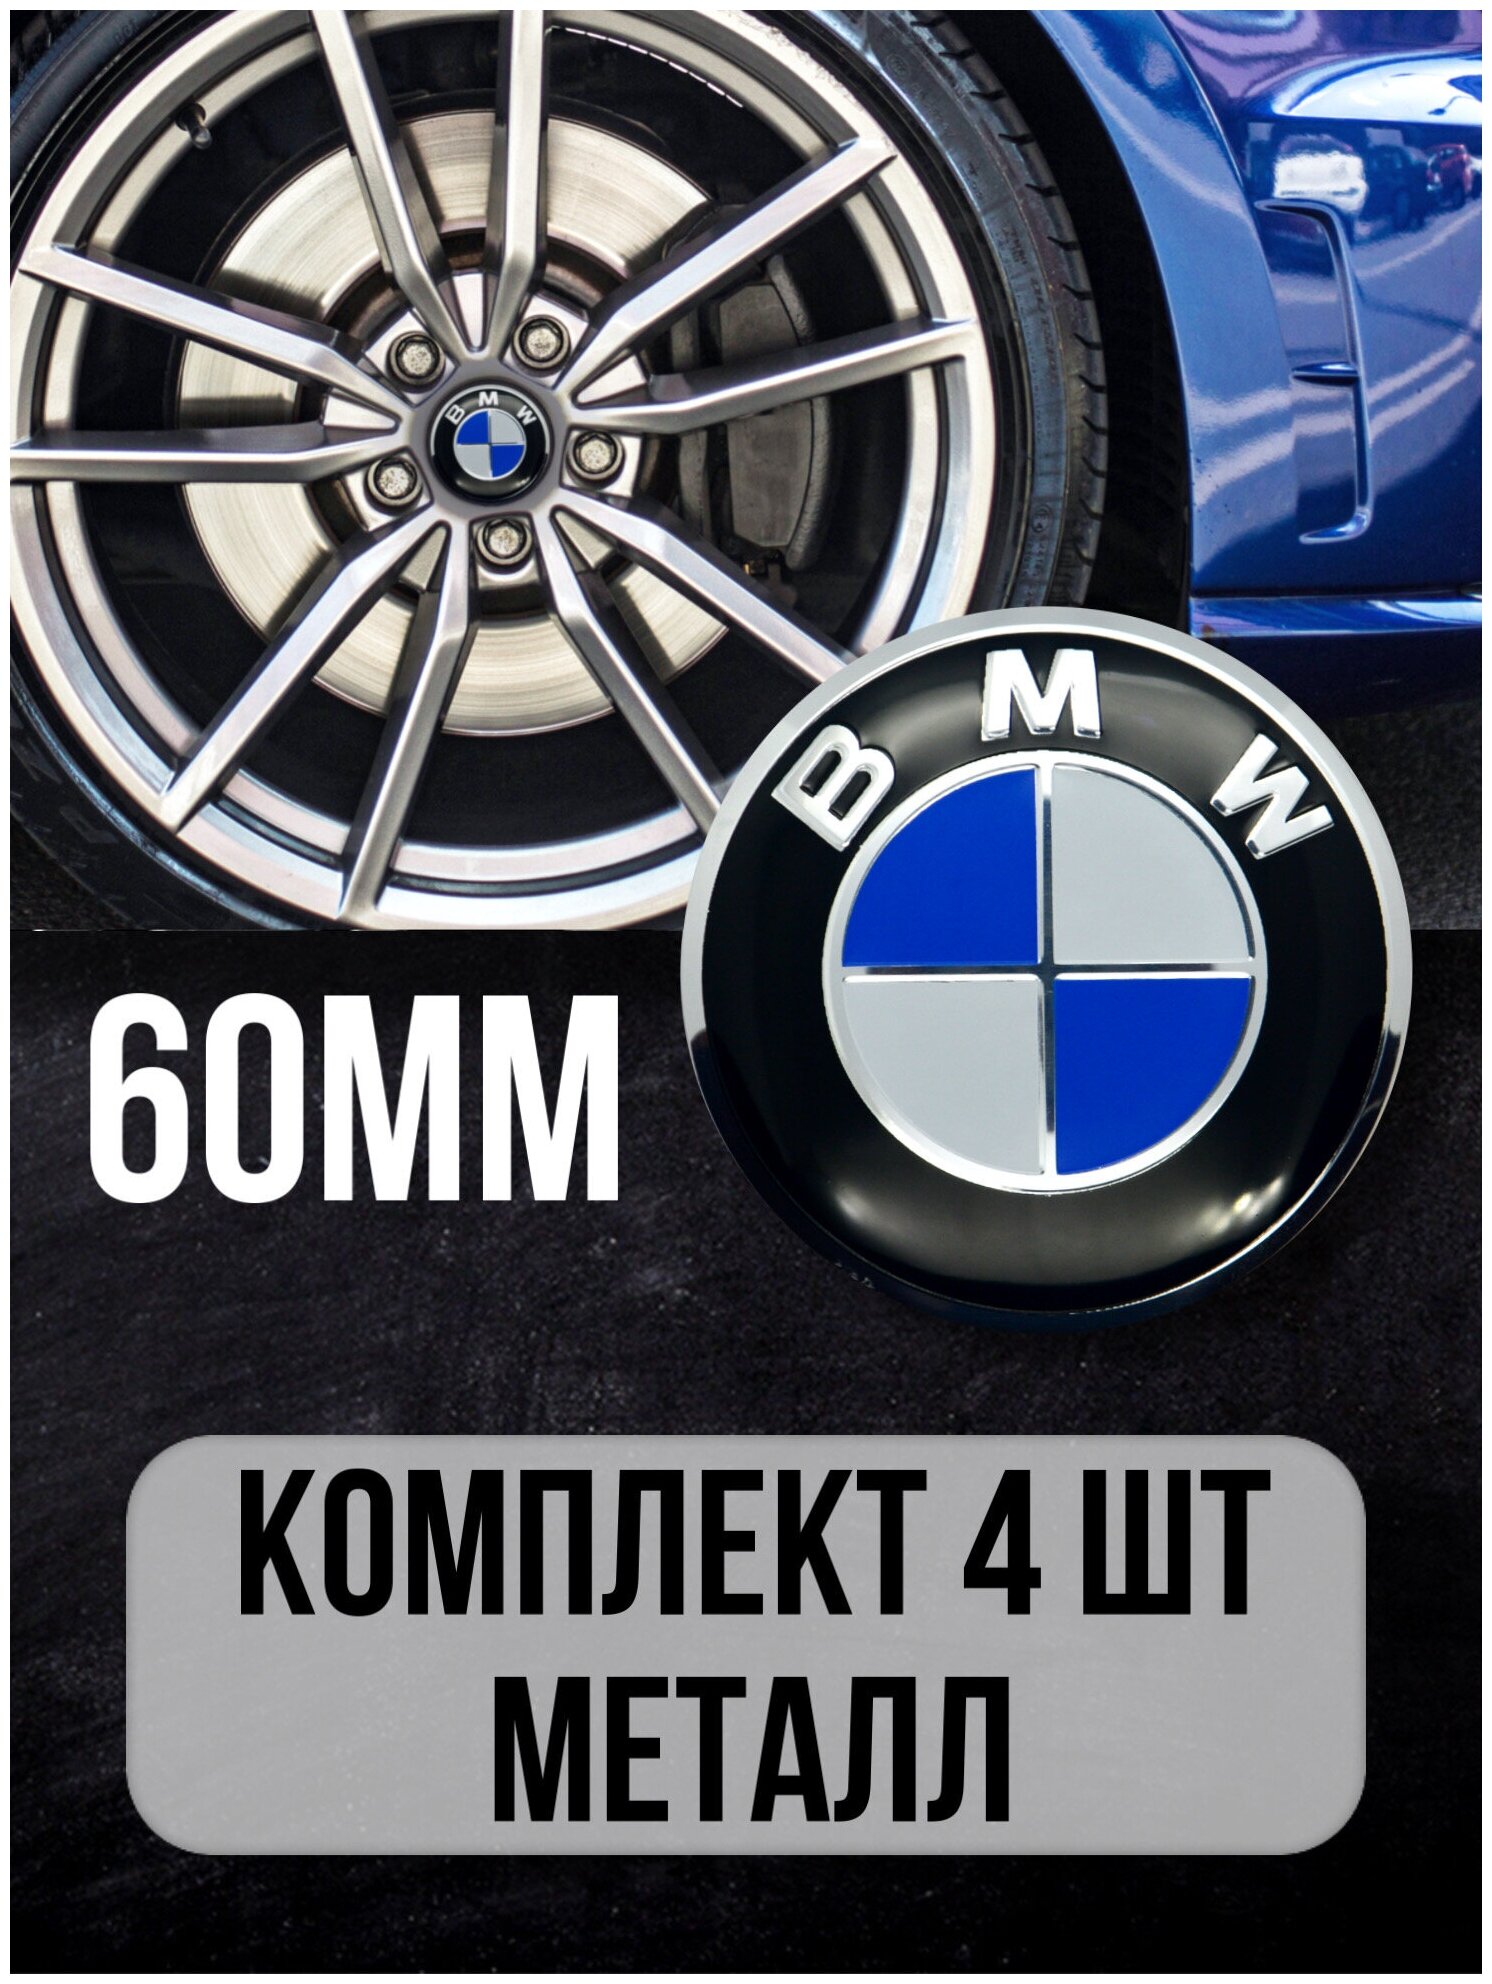 Наклейки на диски автомобильные Mashinokom с логотипом BMW D-60 mm комплект 4 шт.